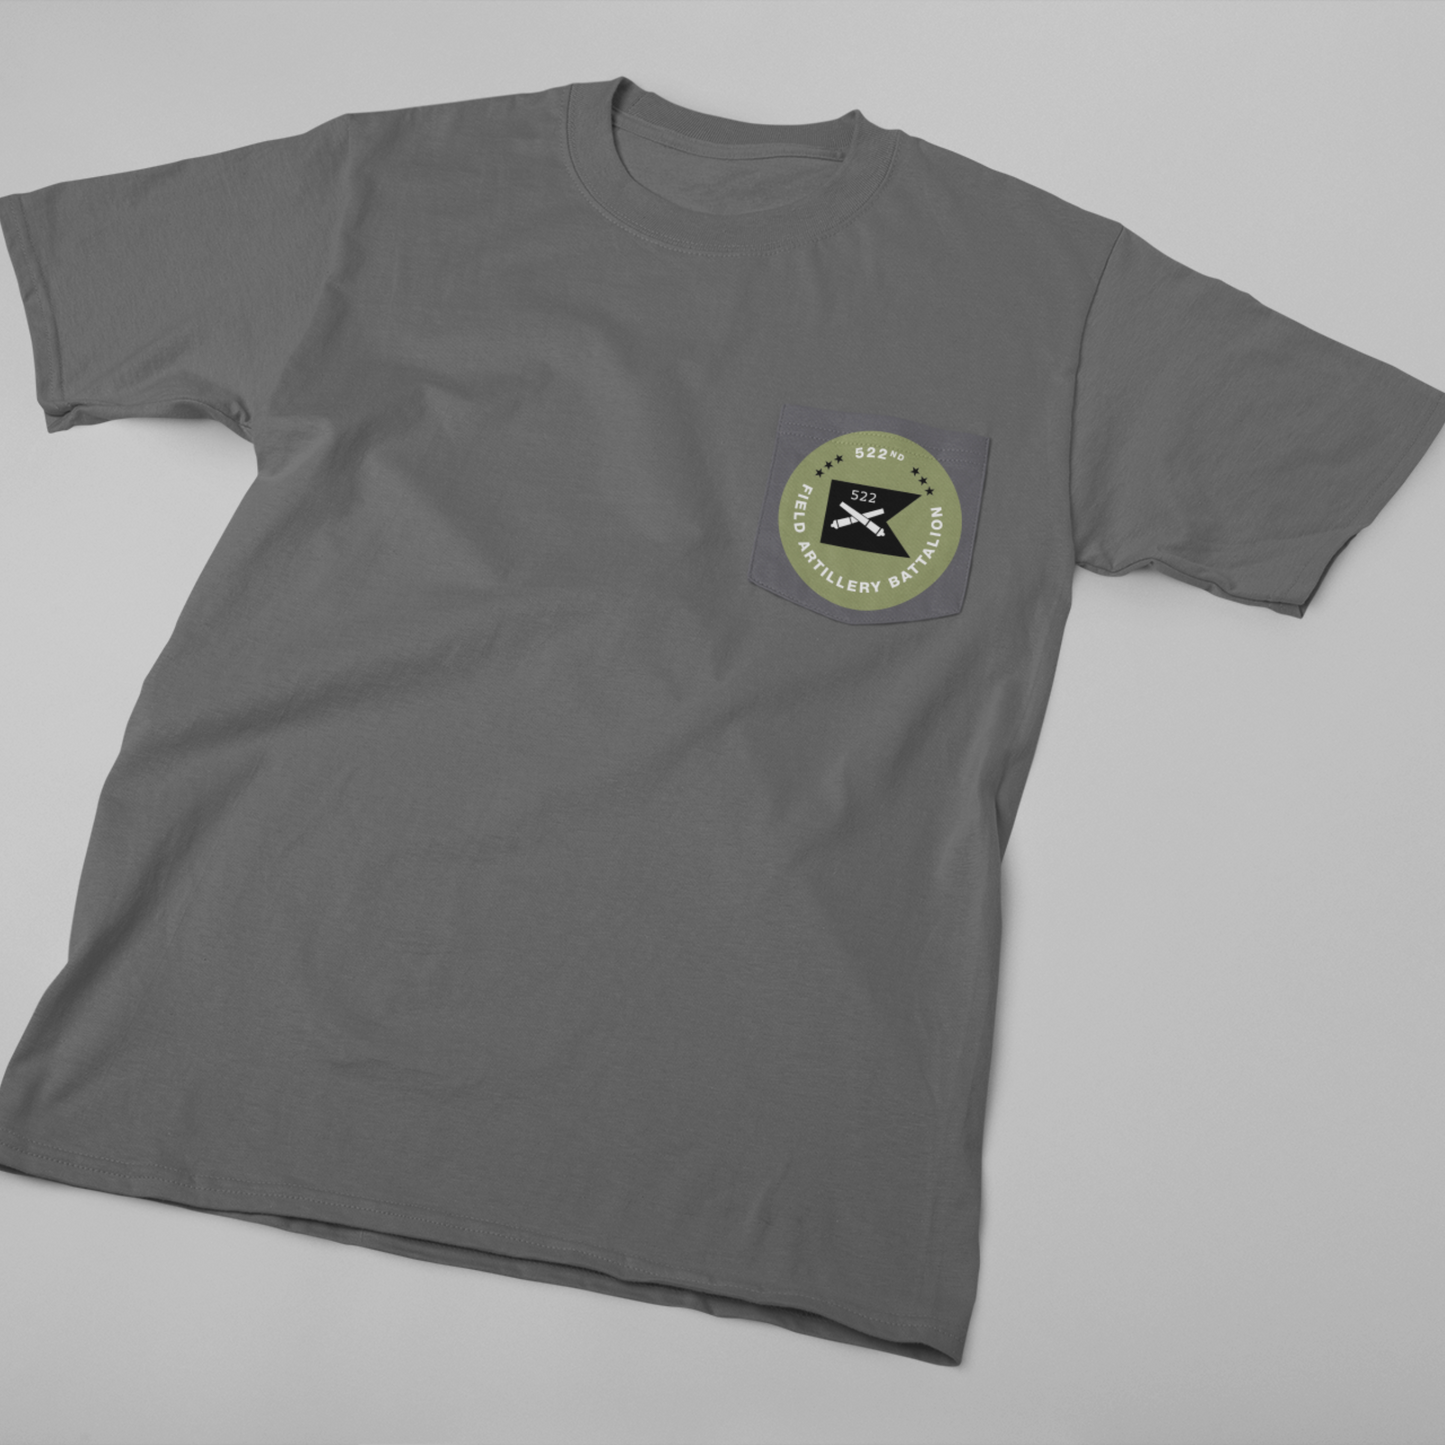 522nd Field Artillery Battalion Pocket T-Shirt